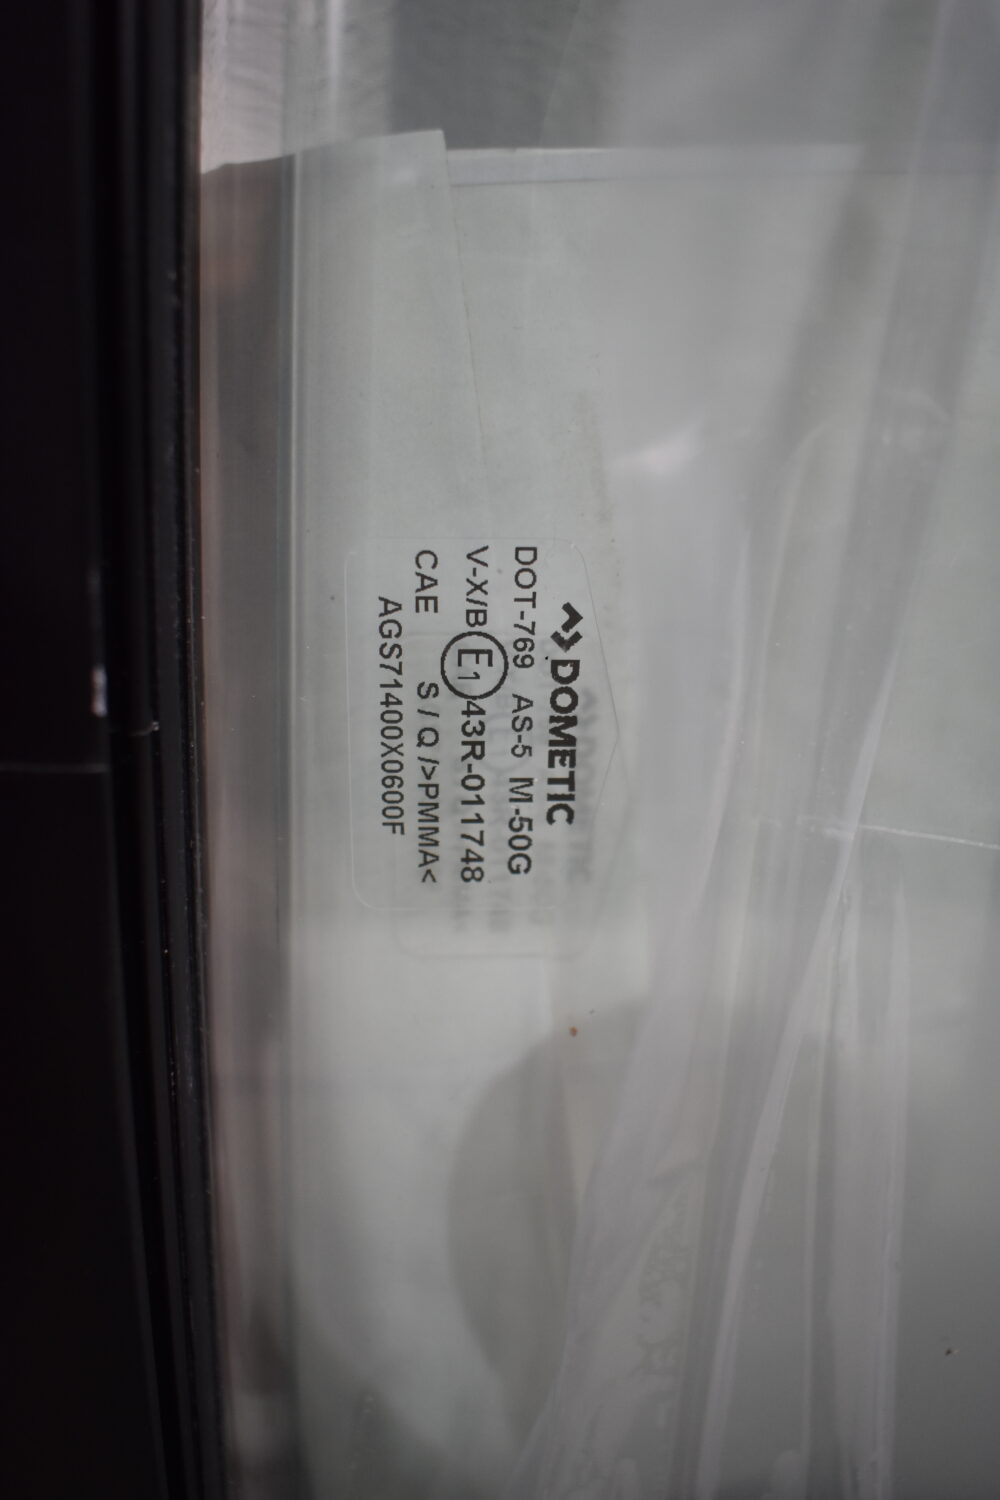 Dometic Schiebefenster S7 1400x600mm schwarz